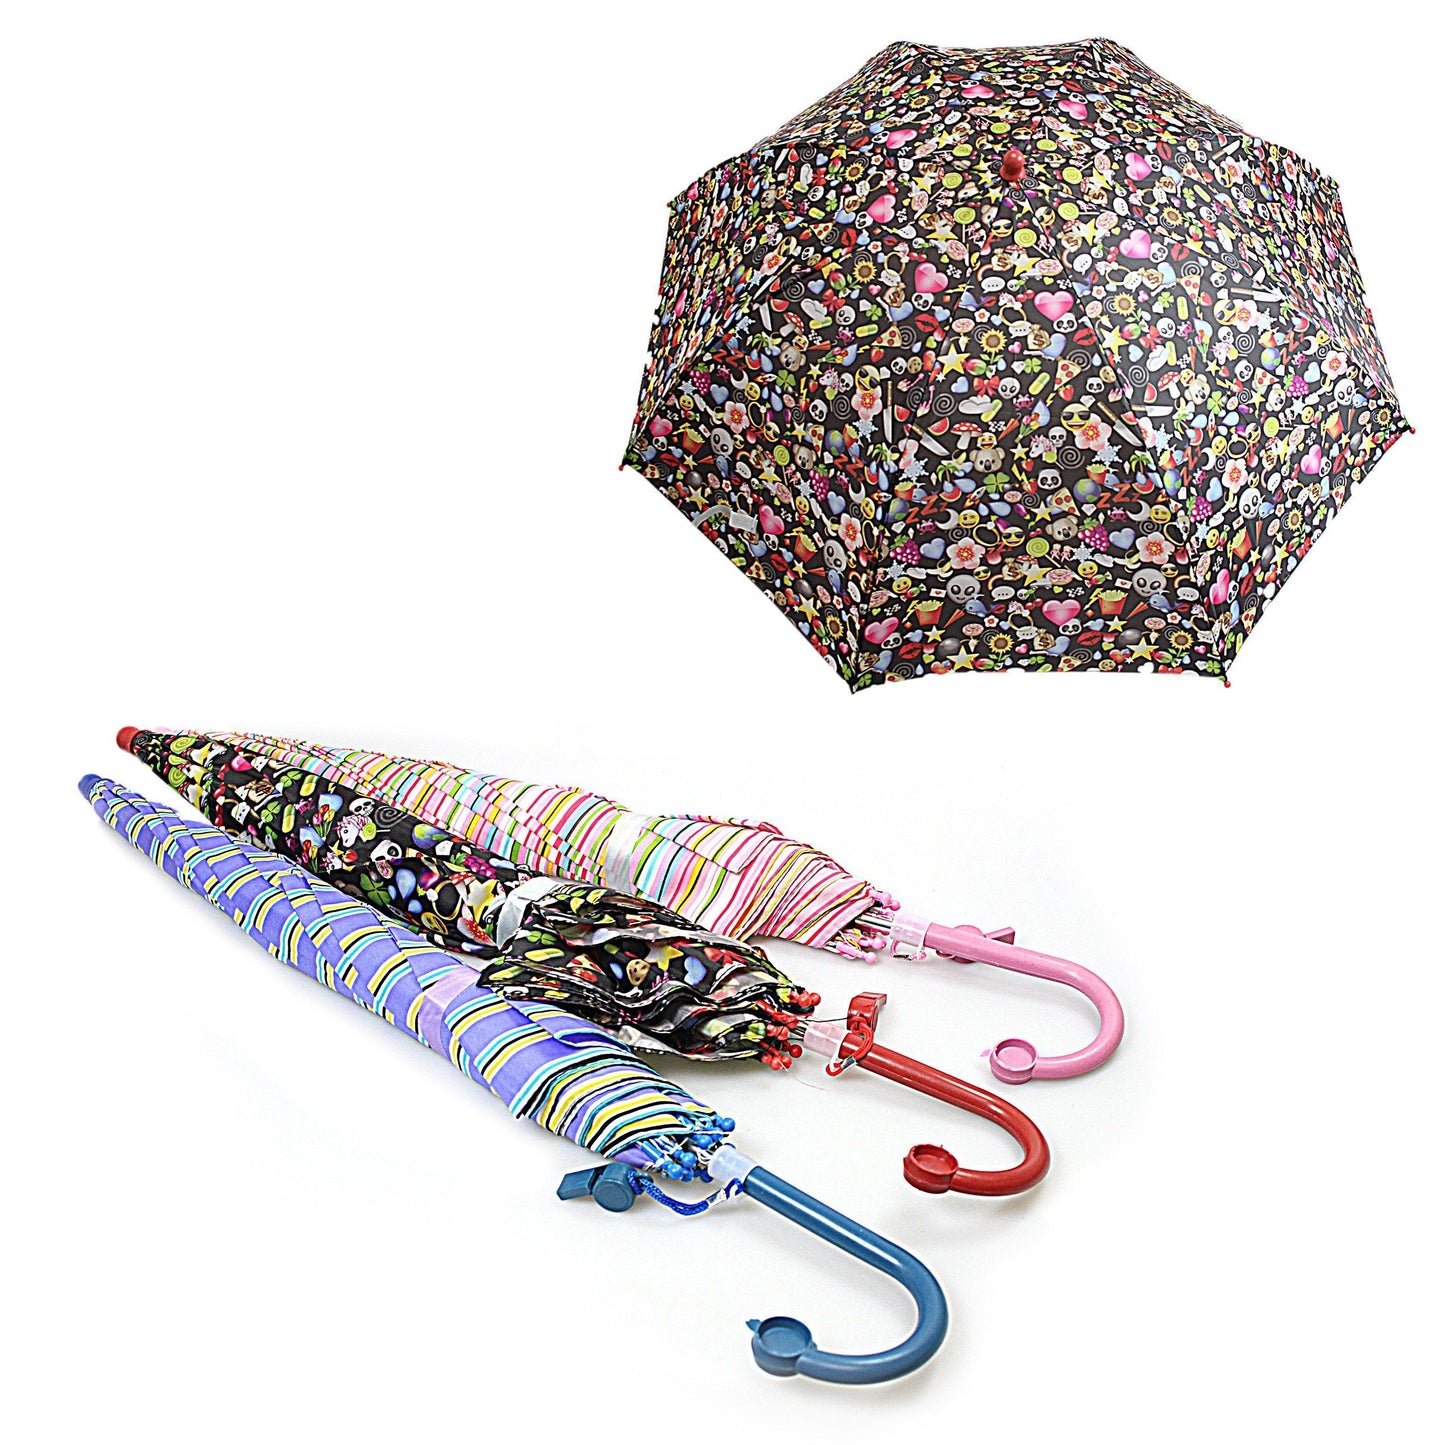 Kids Printed Waterproof Umbrella In Assorted Designs 1124 (Parcel Rate)